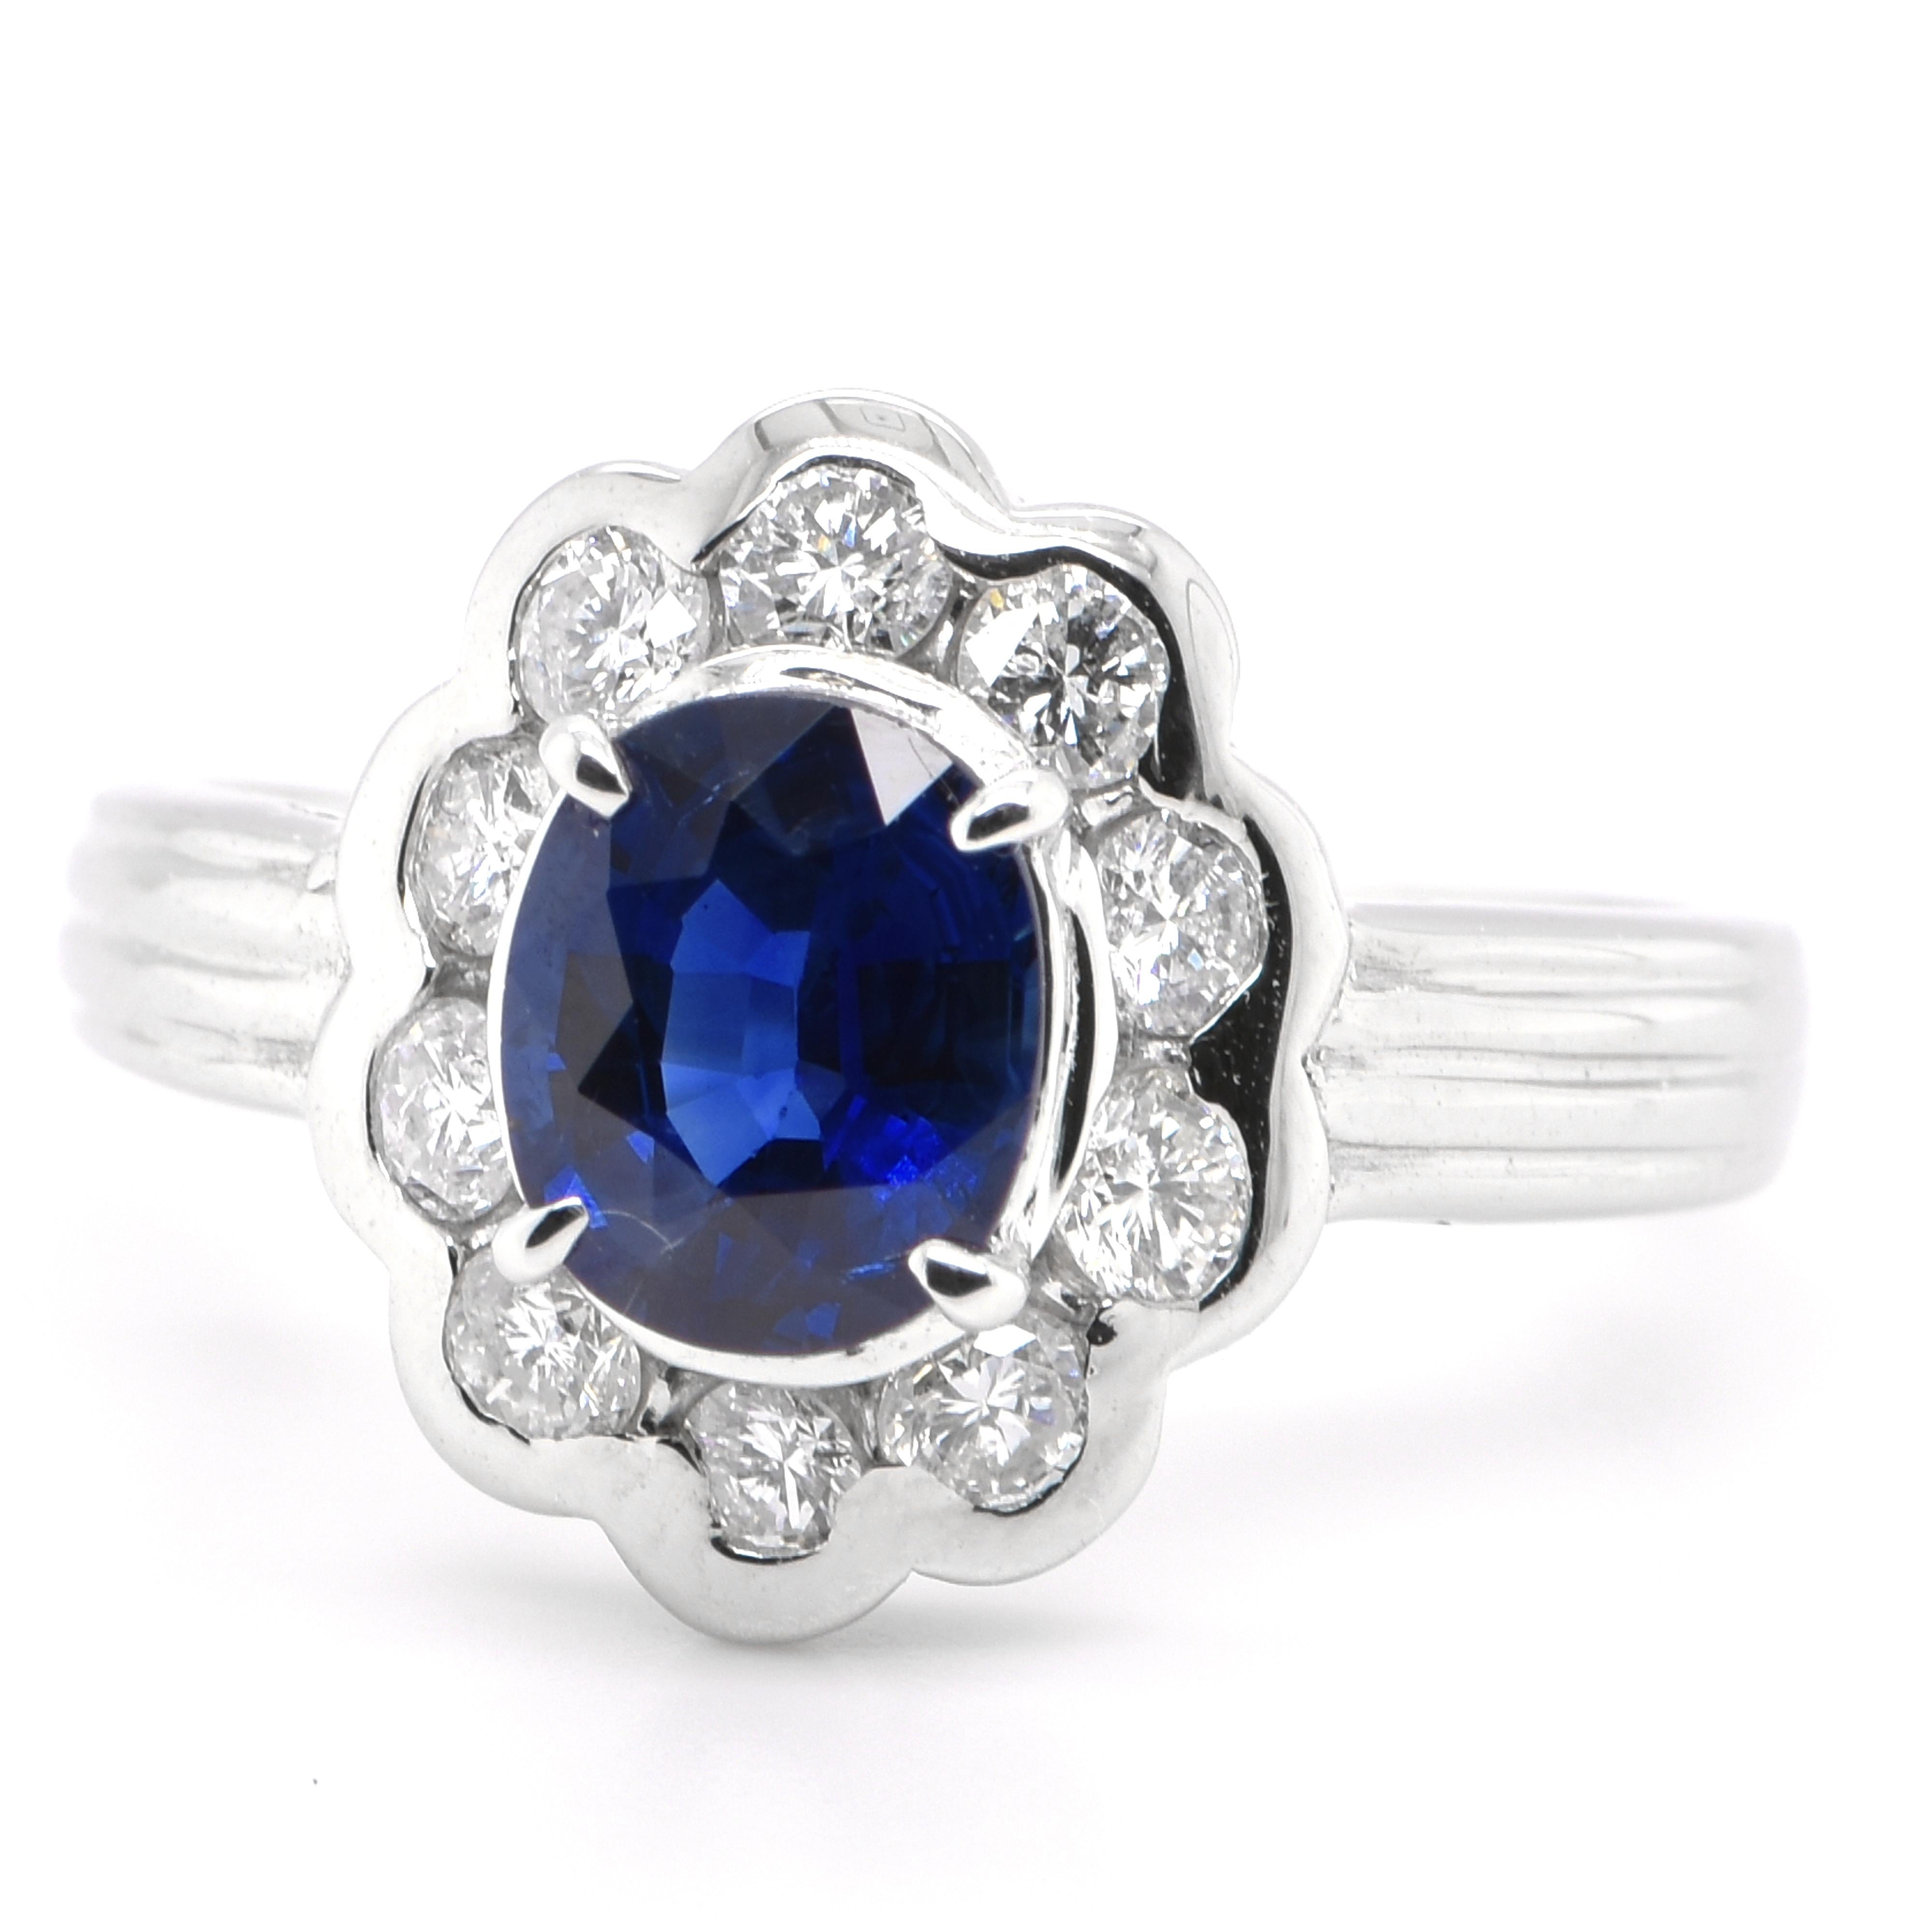 Ein schöner Ring im edwardianischen Stil mit einem 1,18 Karat natürlichen blauen Saphir und 0,55 Karat Diamanten Akzente in Platin. Saphire haben eine außergewöhnliche Haltbarkeit - sie zeichnen sich durch Härte, Zähigkeit und Langlebigkeit aus, was